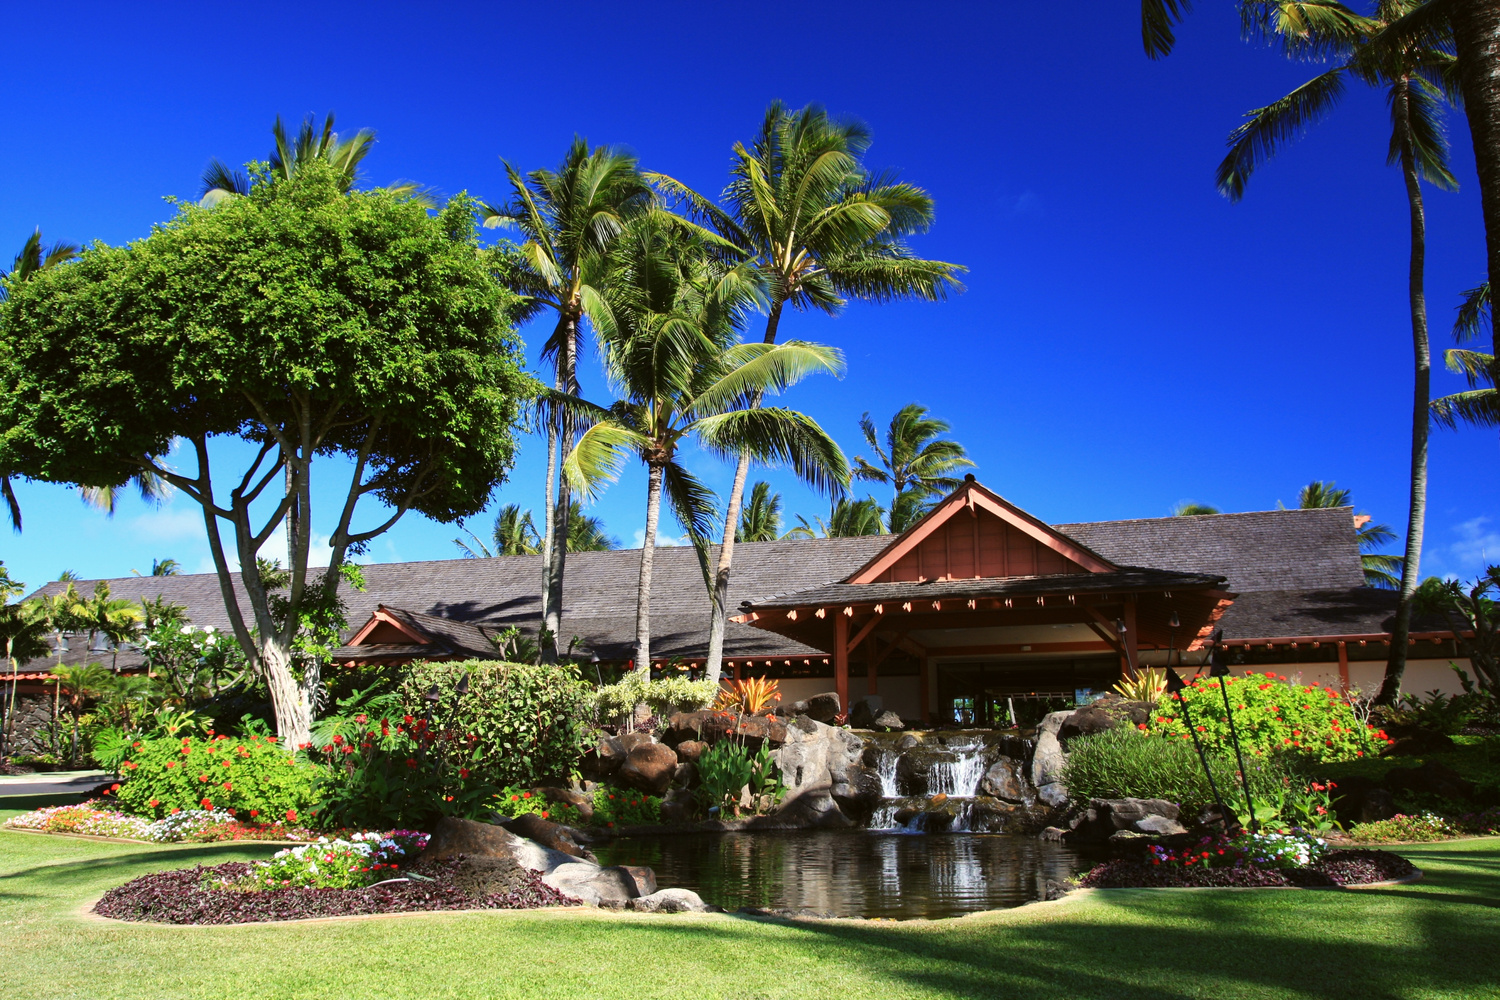 Kauai Hawaii resort hotel